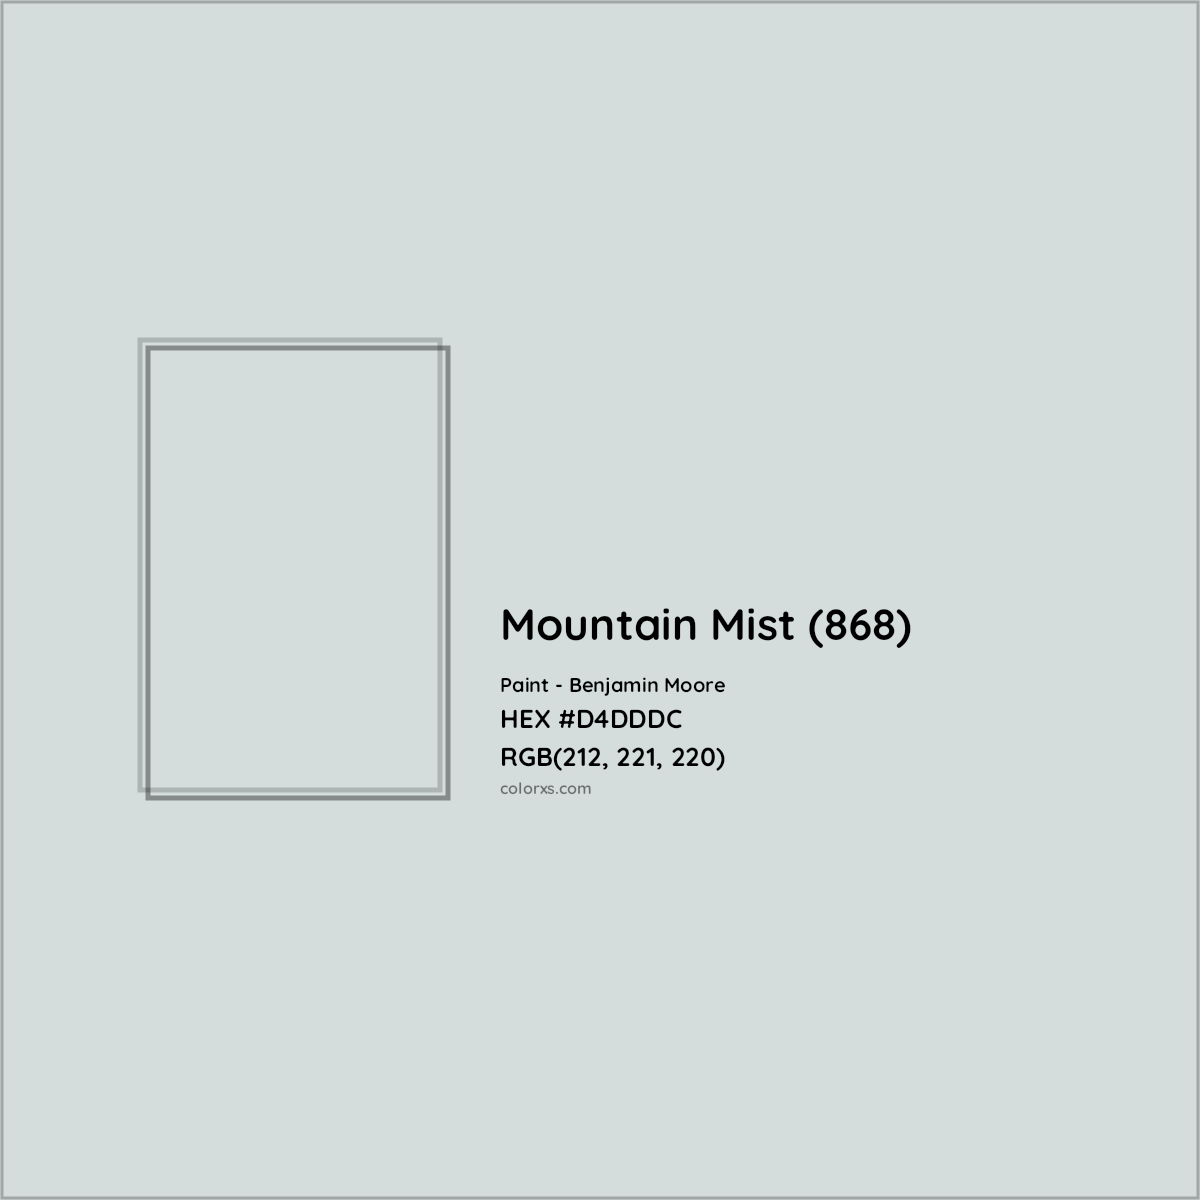 HEX #D4DDDC Mountain Mist (868) Paint Benjamin Moore - Color Code